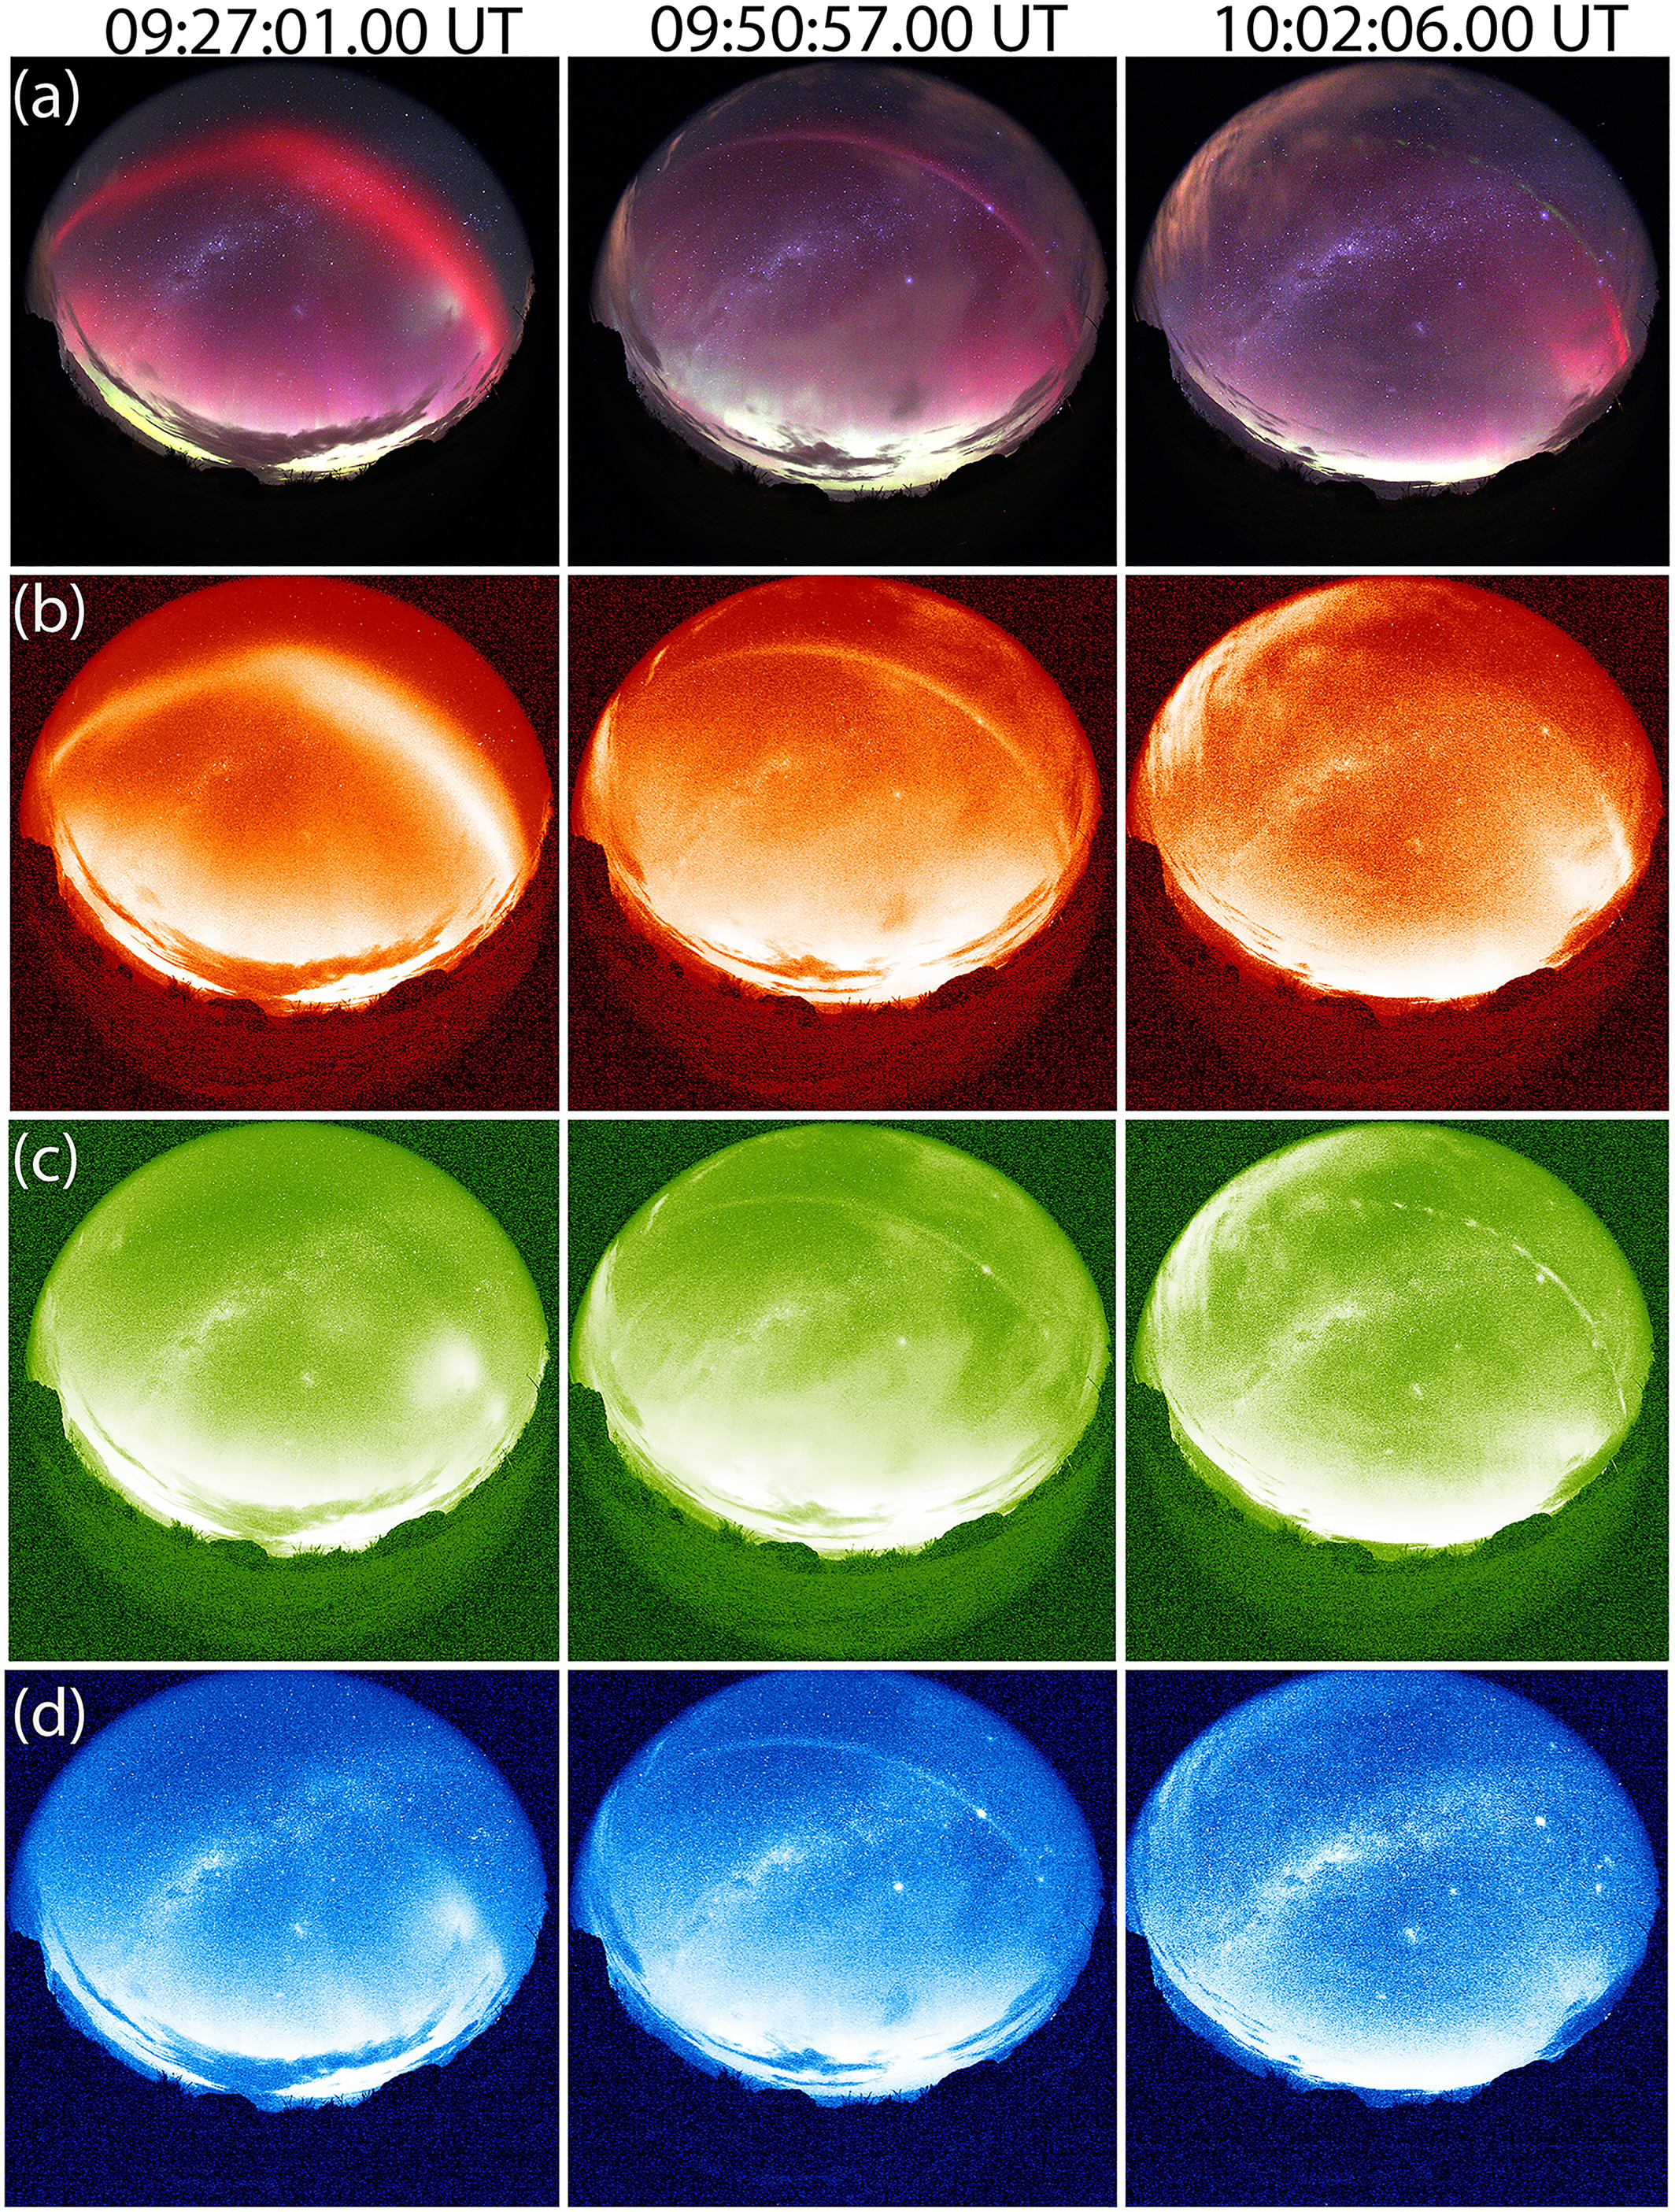 Der vollständige Satz von Polarlichtbildern, die die Polarlichtobjekte durch eine Reihe von Farbfiltern zeigen.